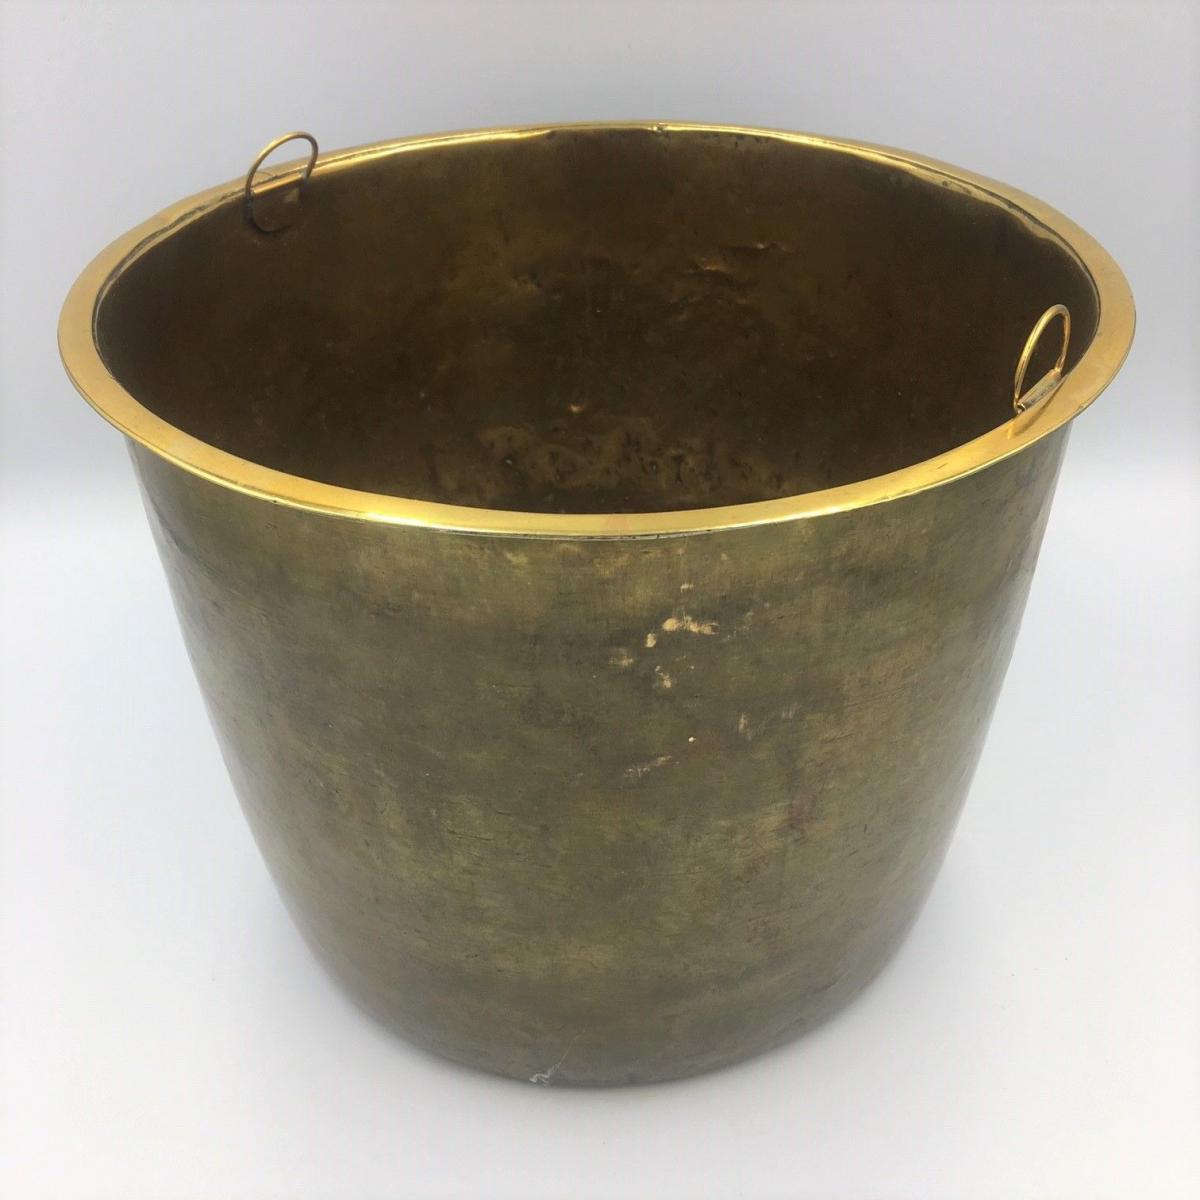 Antique brass bound bucket